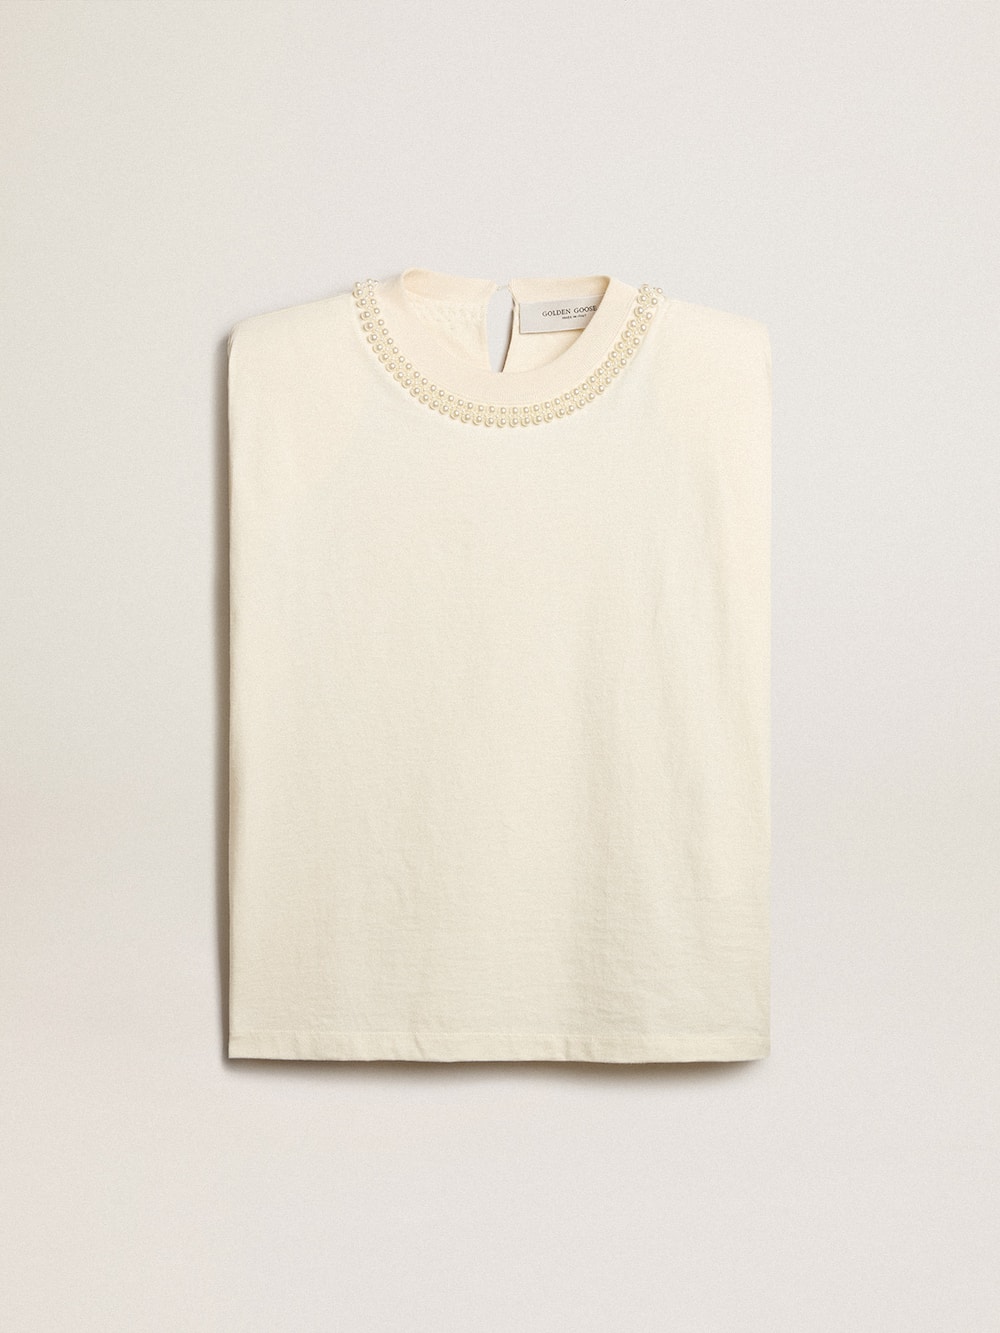 Golden Goose - Camiseta sem manga cor branco usado com bordado de pérolas in 